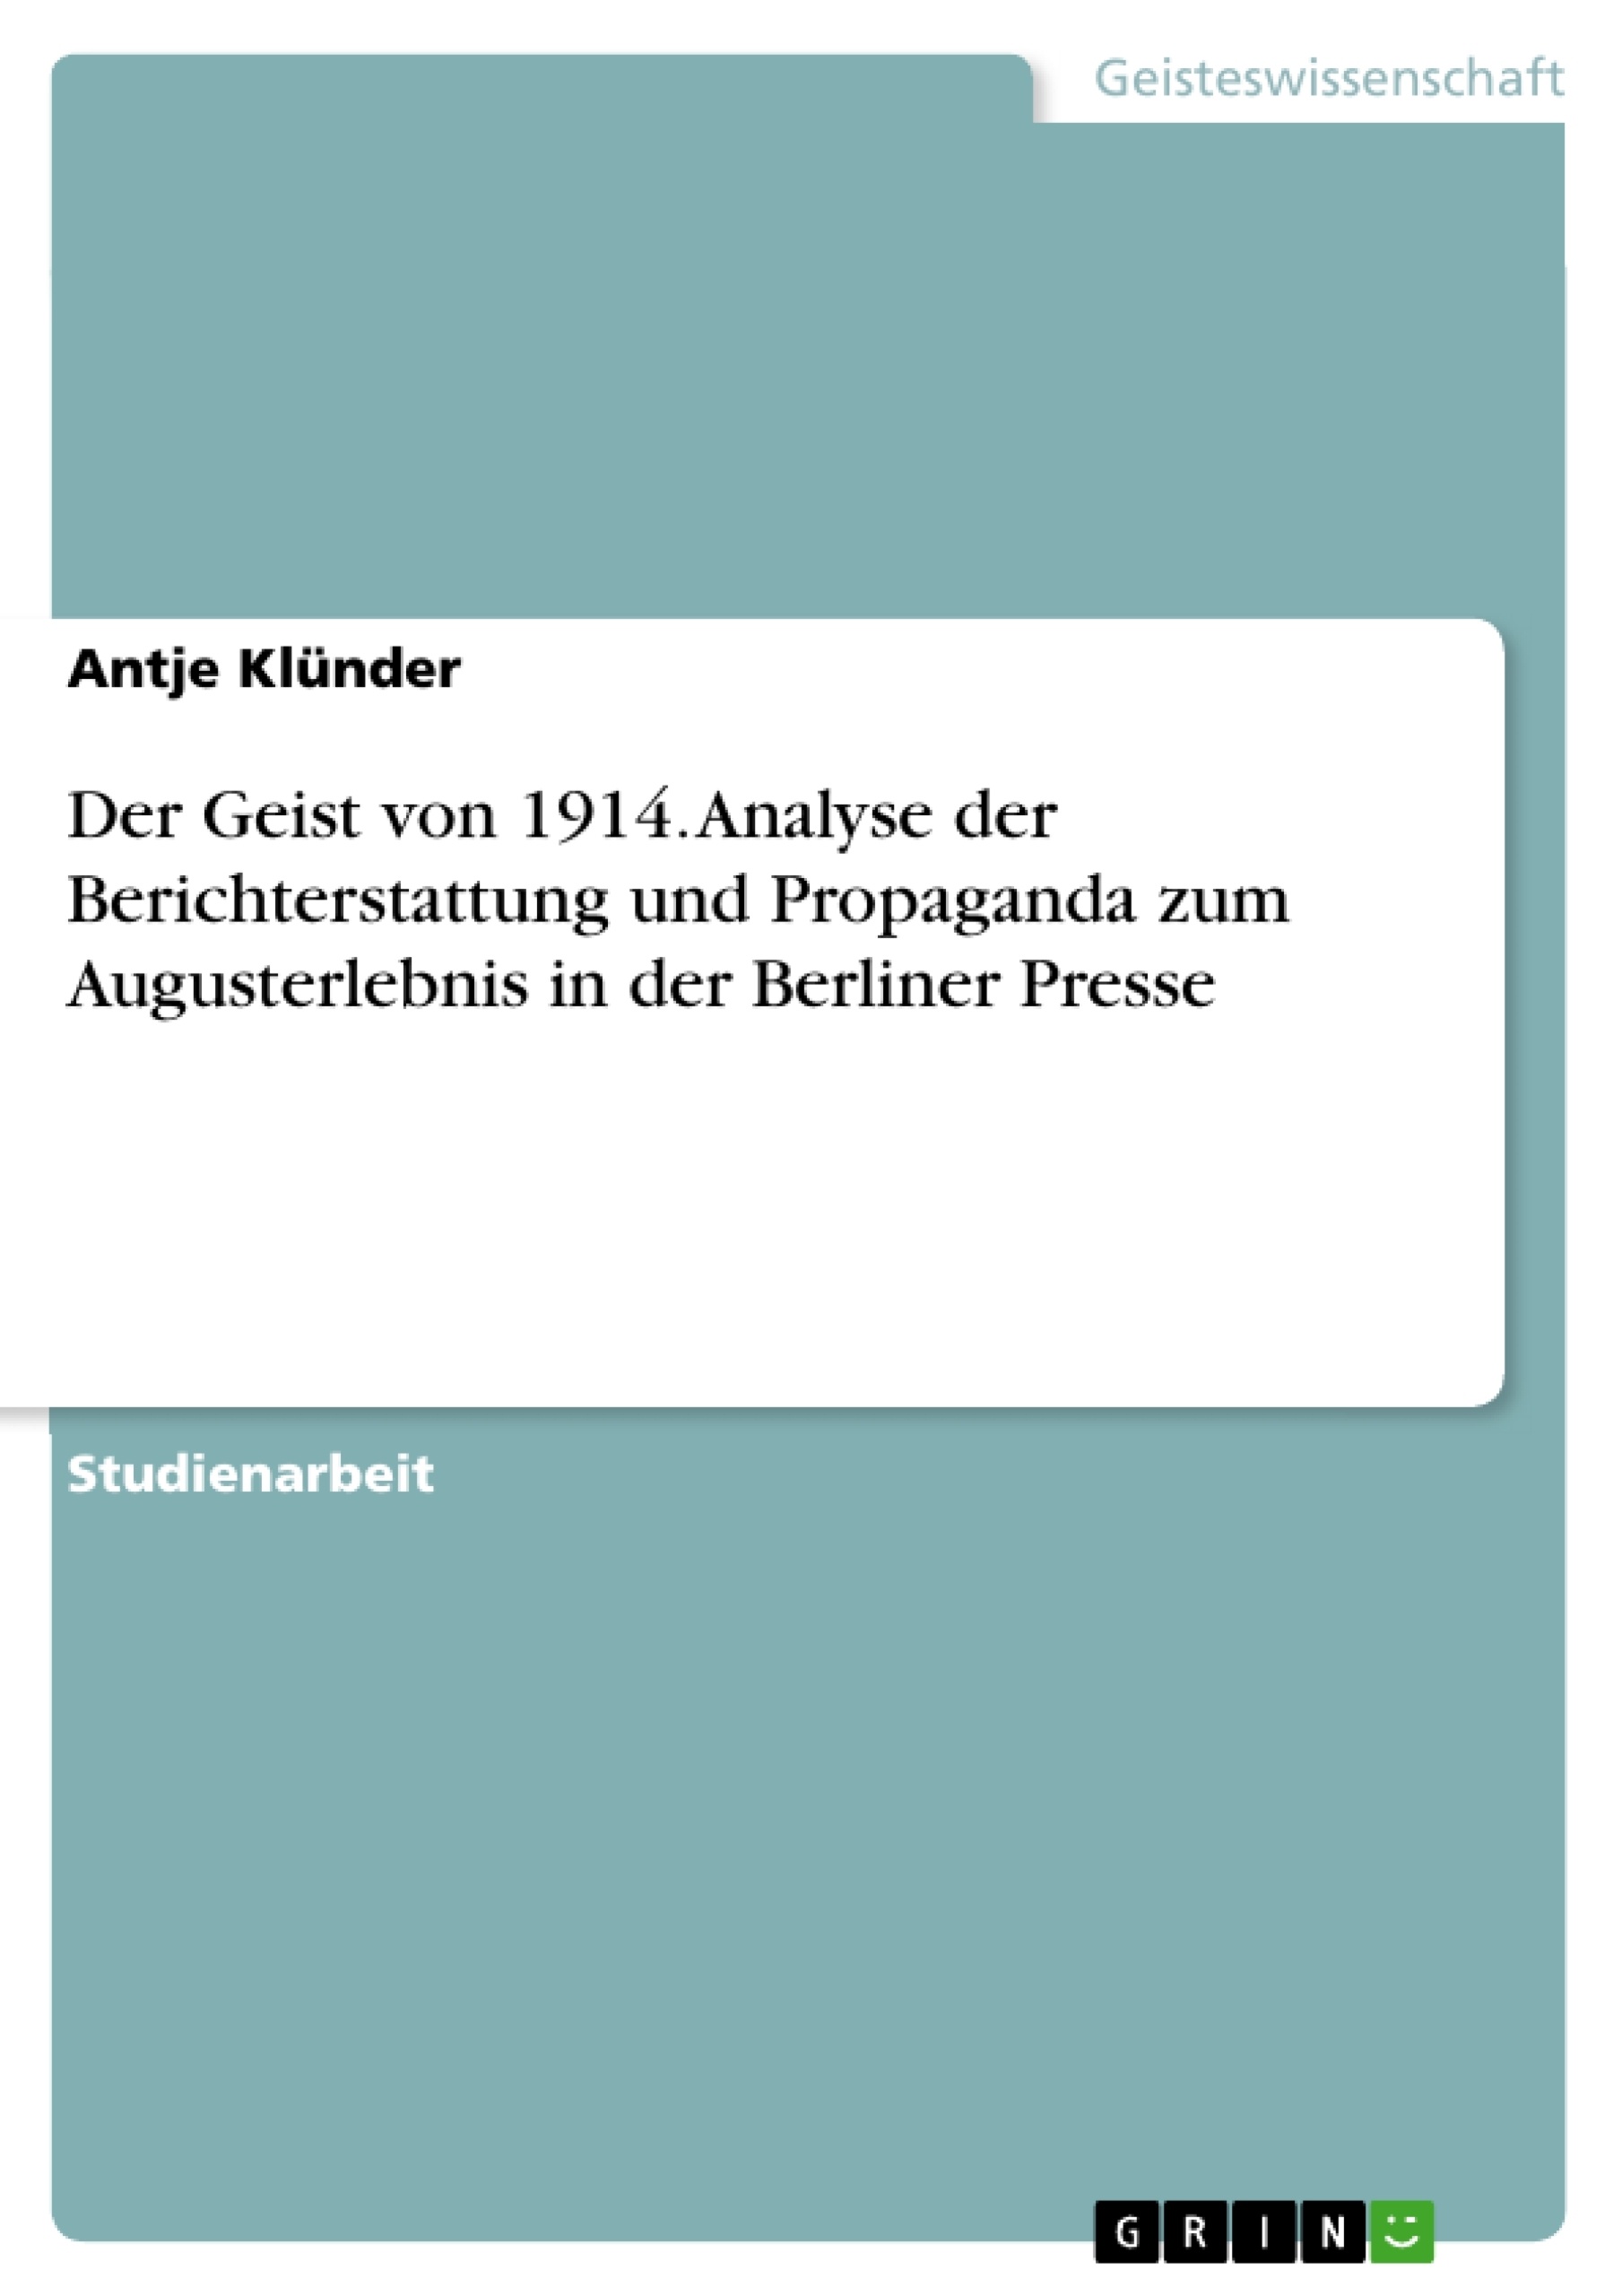 Título: Der Geist von 1914. Analyse der Berichterstattung und Propaganda zum Augusterlebnis in der Berliner Presse